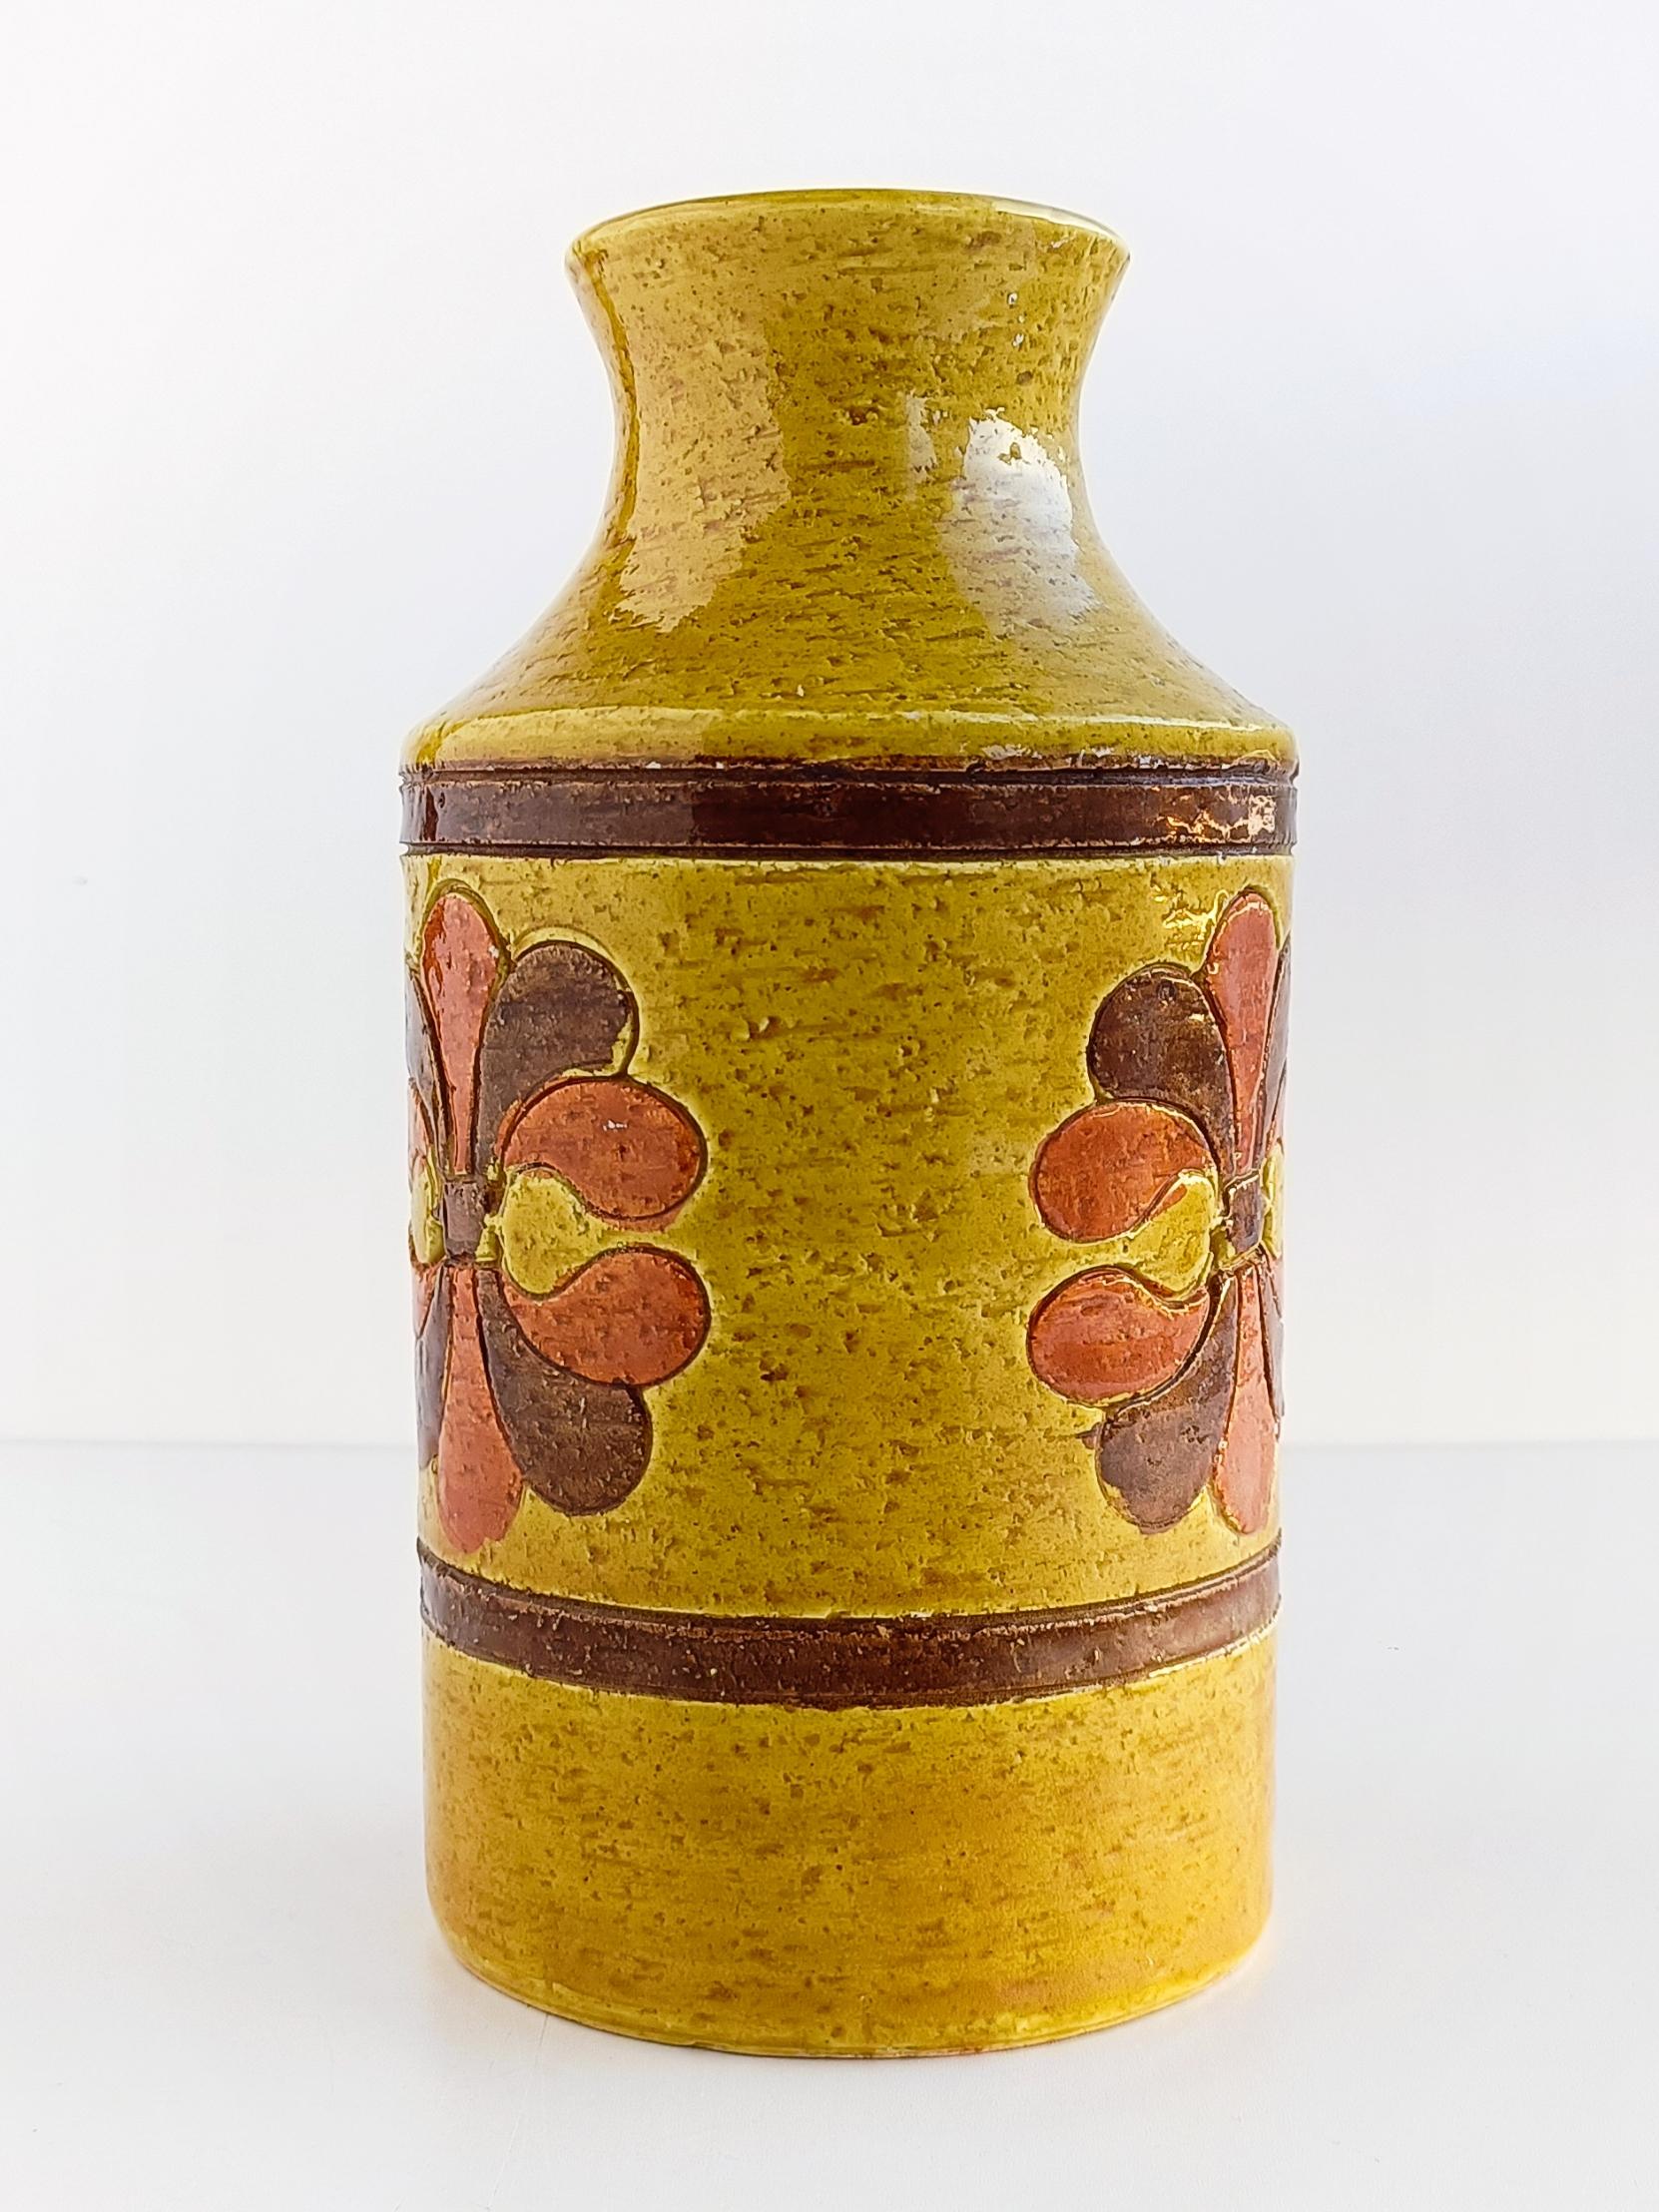 Aldo Londi war ein bekannter italienischer Keramiker, der für seine Arbeit bei Bitossi Ceramiche bekannt war. Bitossi-Keramik ist für ihr unverwechselbares Design und ihre Handwerkskunst hoch angesehen und bei Sammlern italienischer Keramik aus der